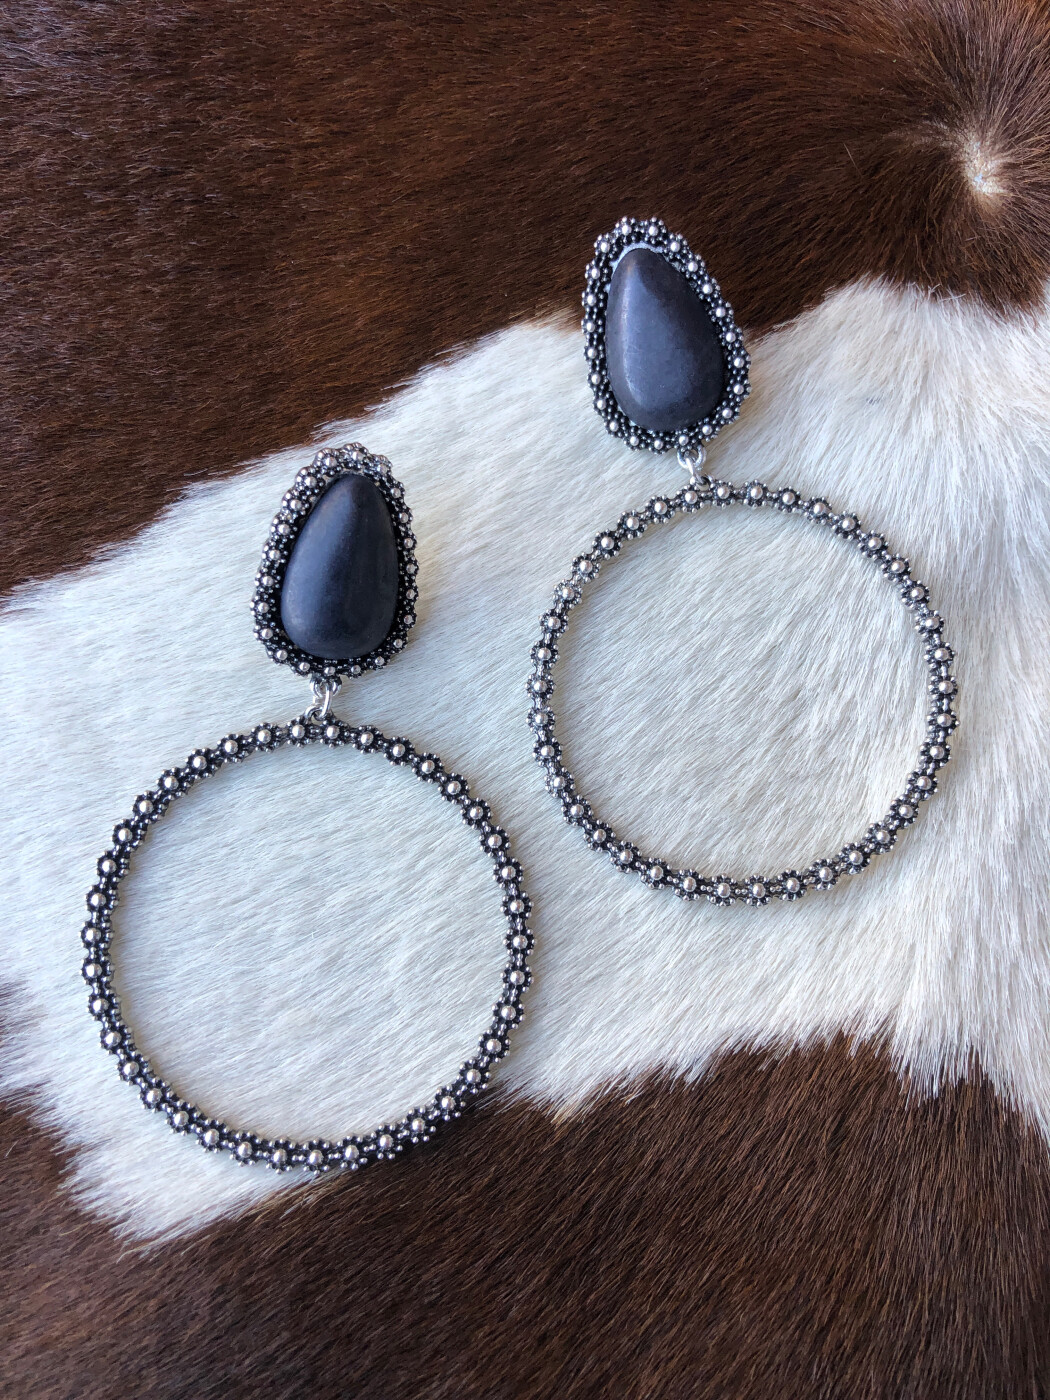 Black party wear earrings for women – Storeofarts (ppcreations)